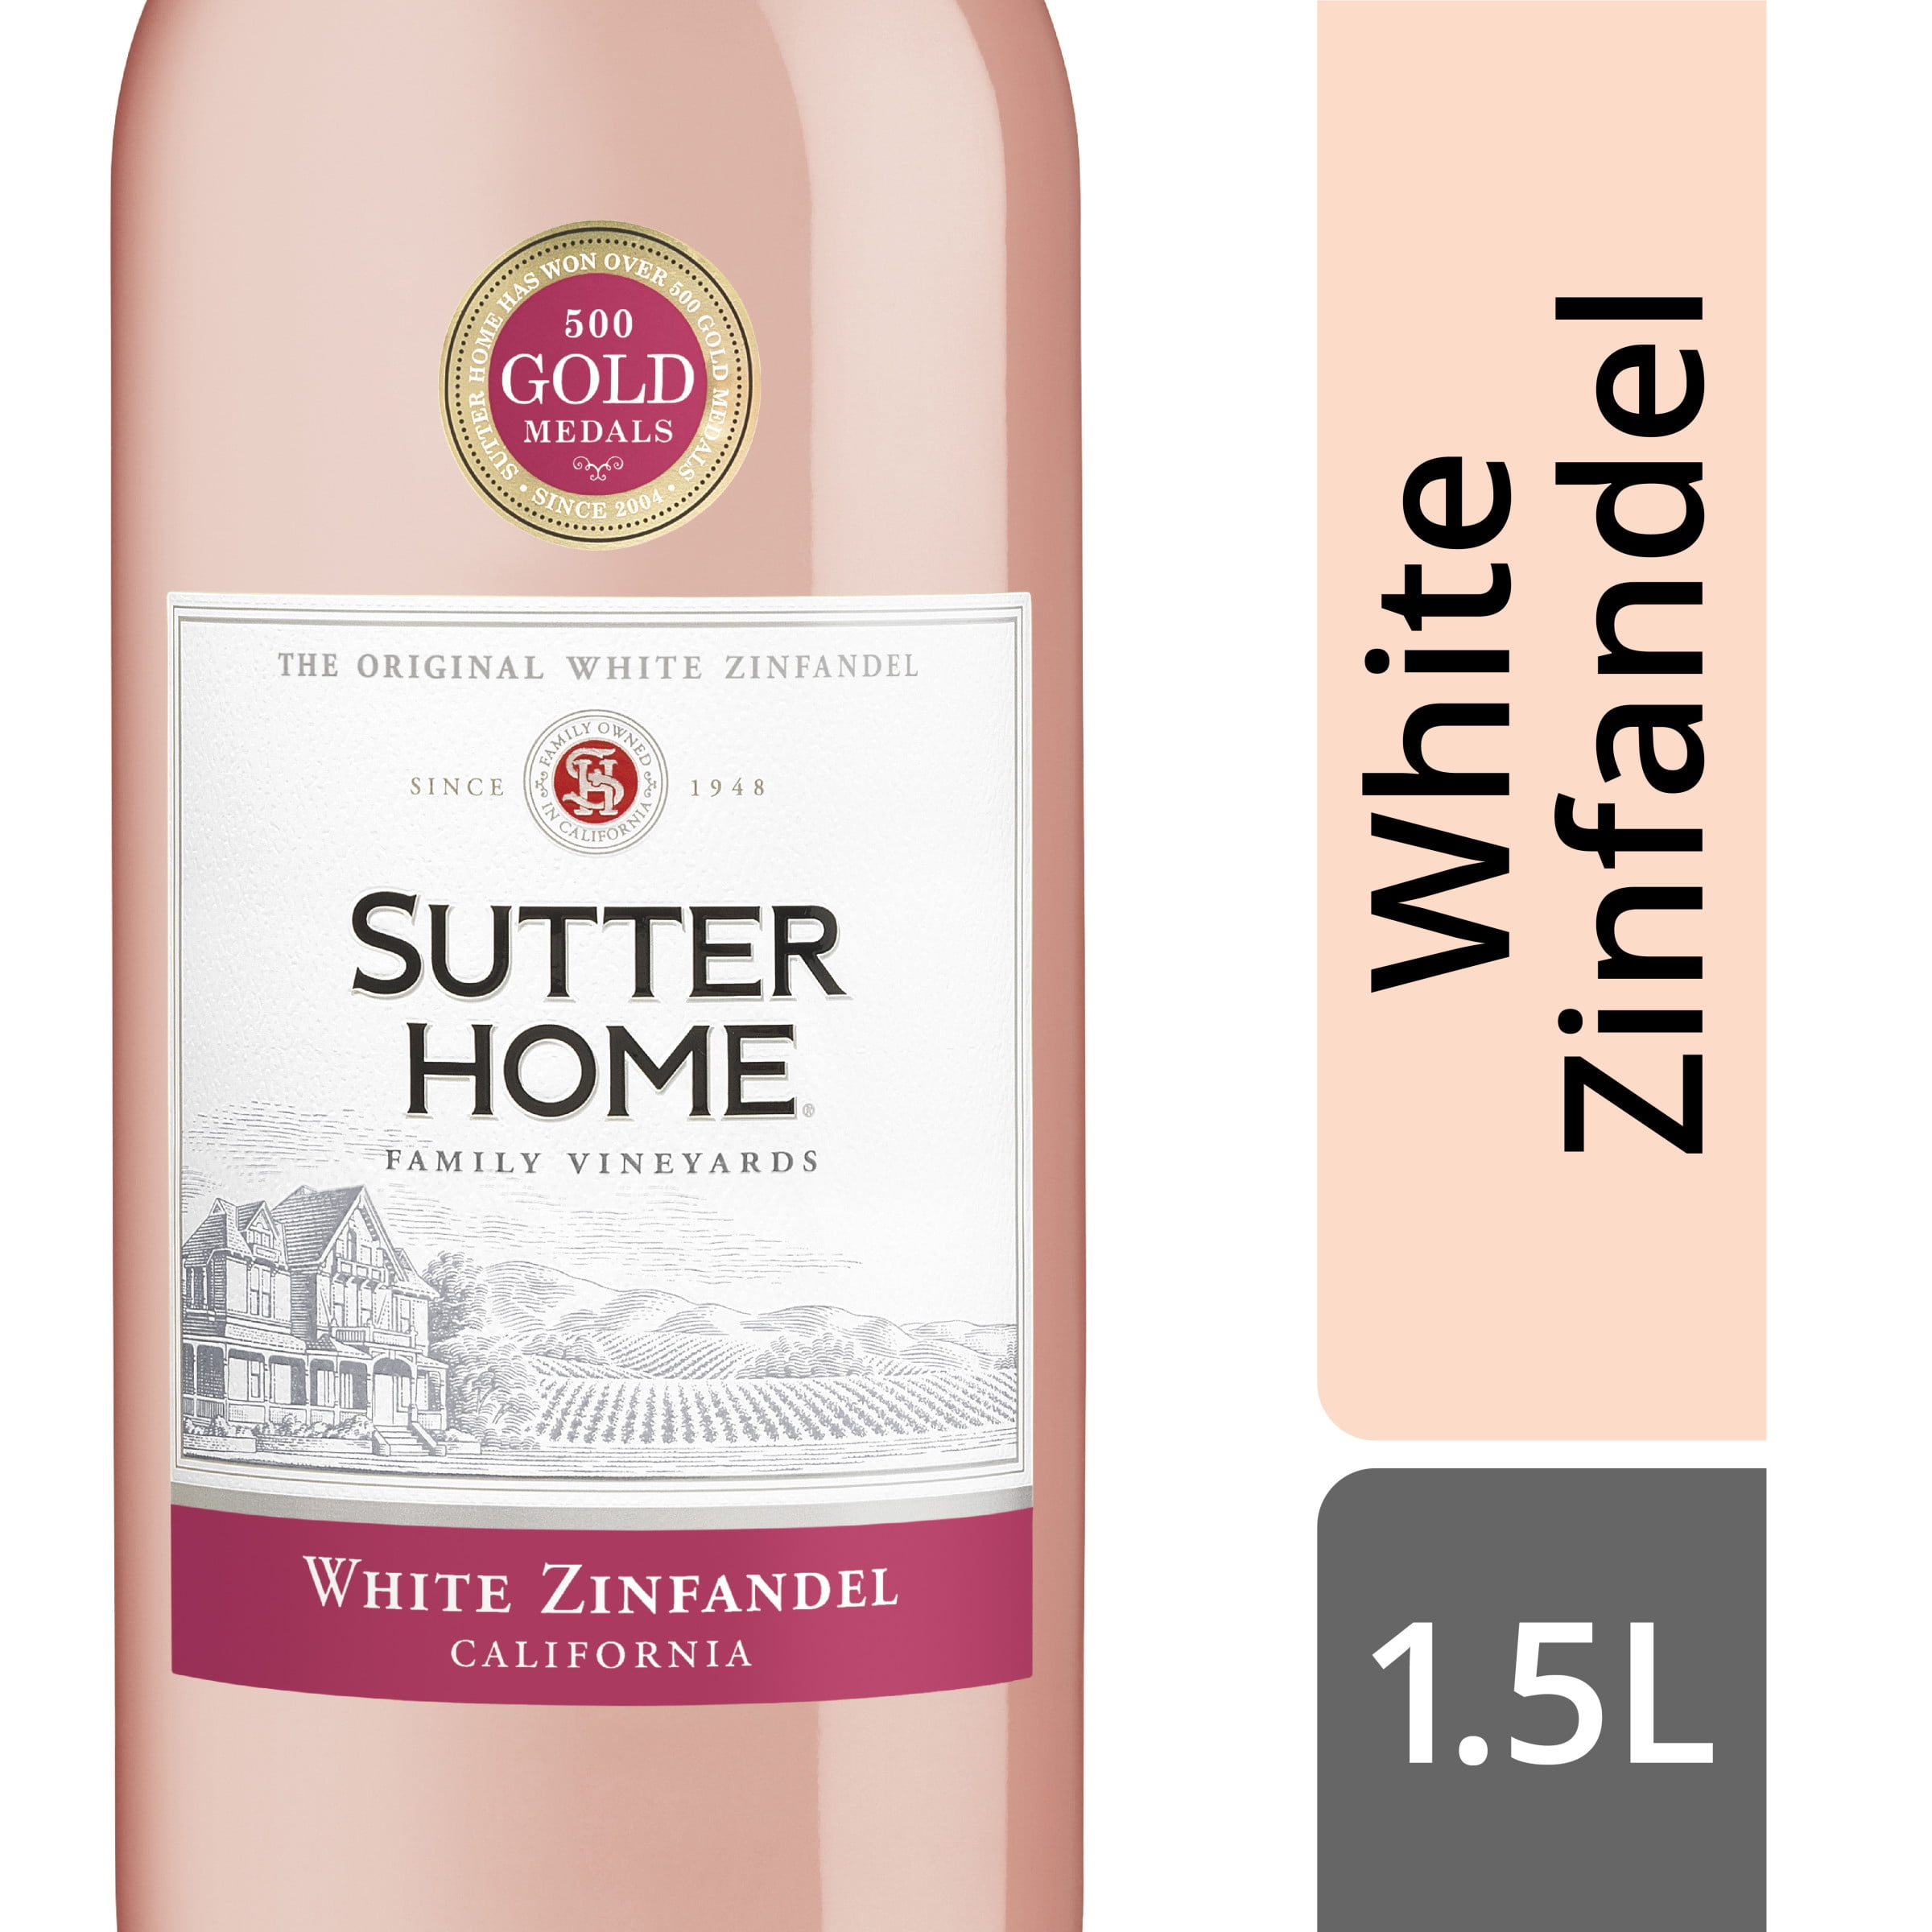 sutter-home-white-zinfandel-rose-wine-1-5l-wine-bottle-walmart